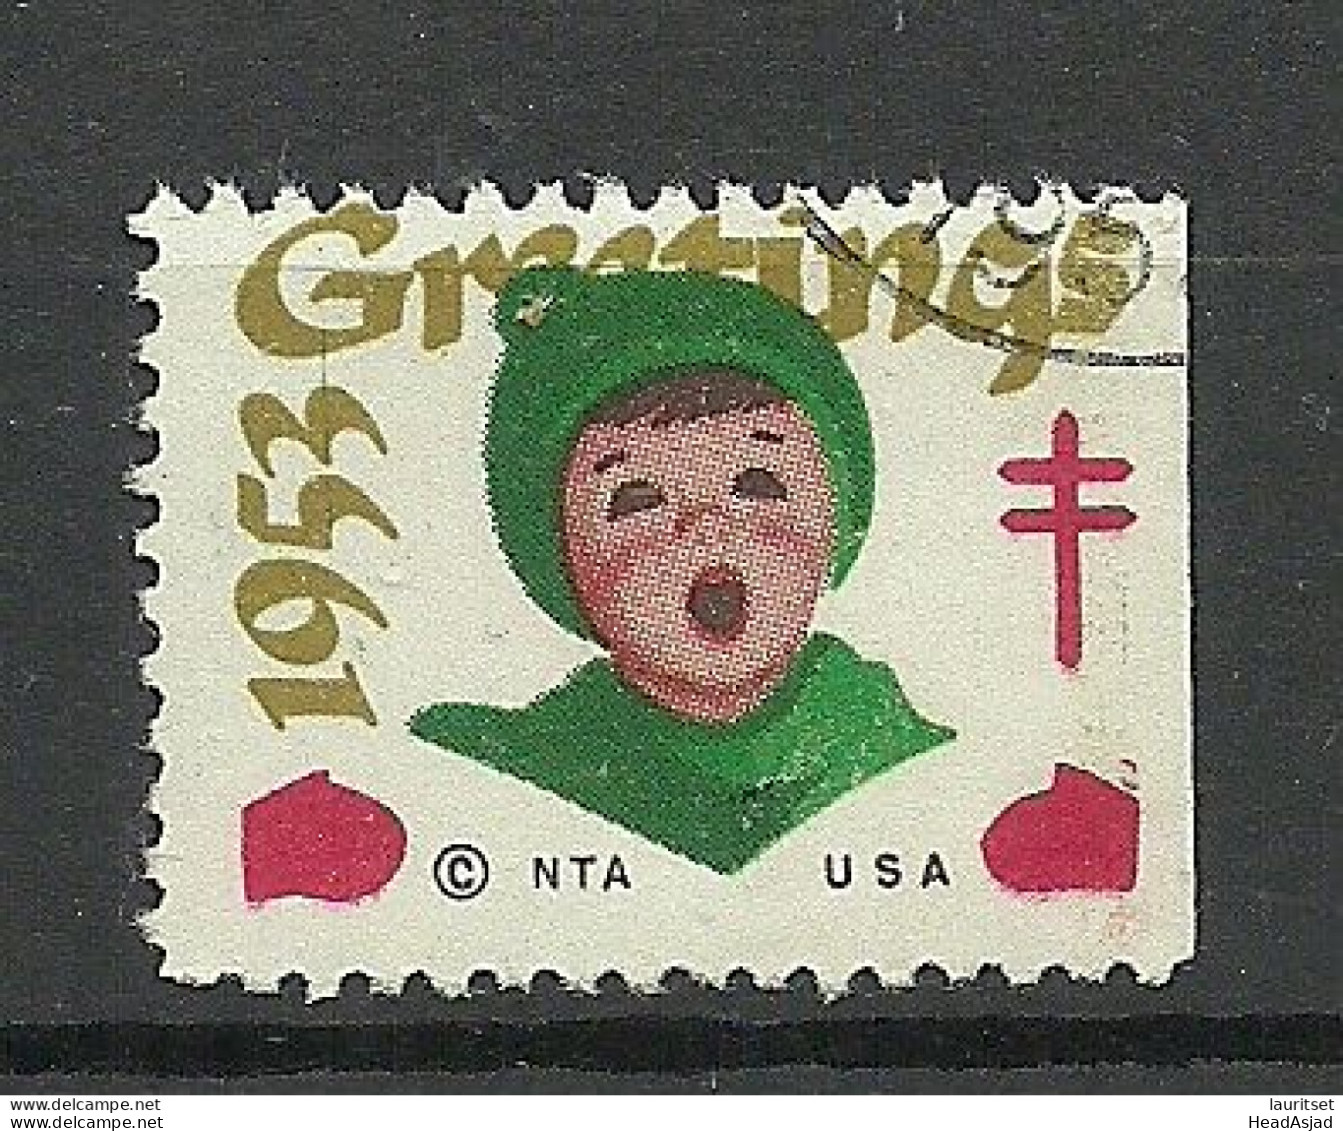 USA 1953 Christmas Noel Weihnachten Vignette Poster Stamp O - Weihnachten